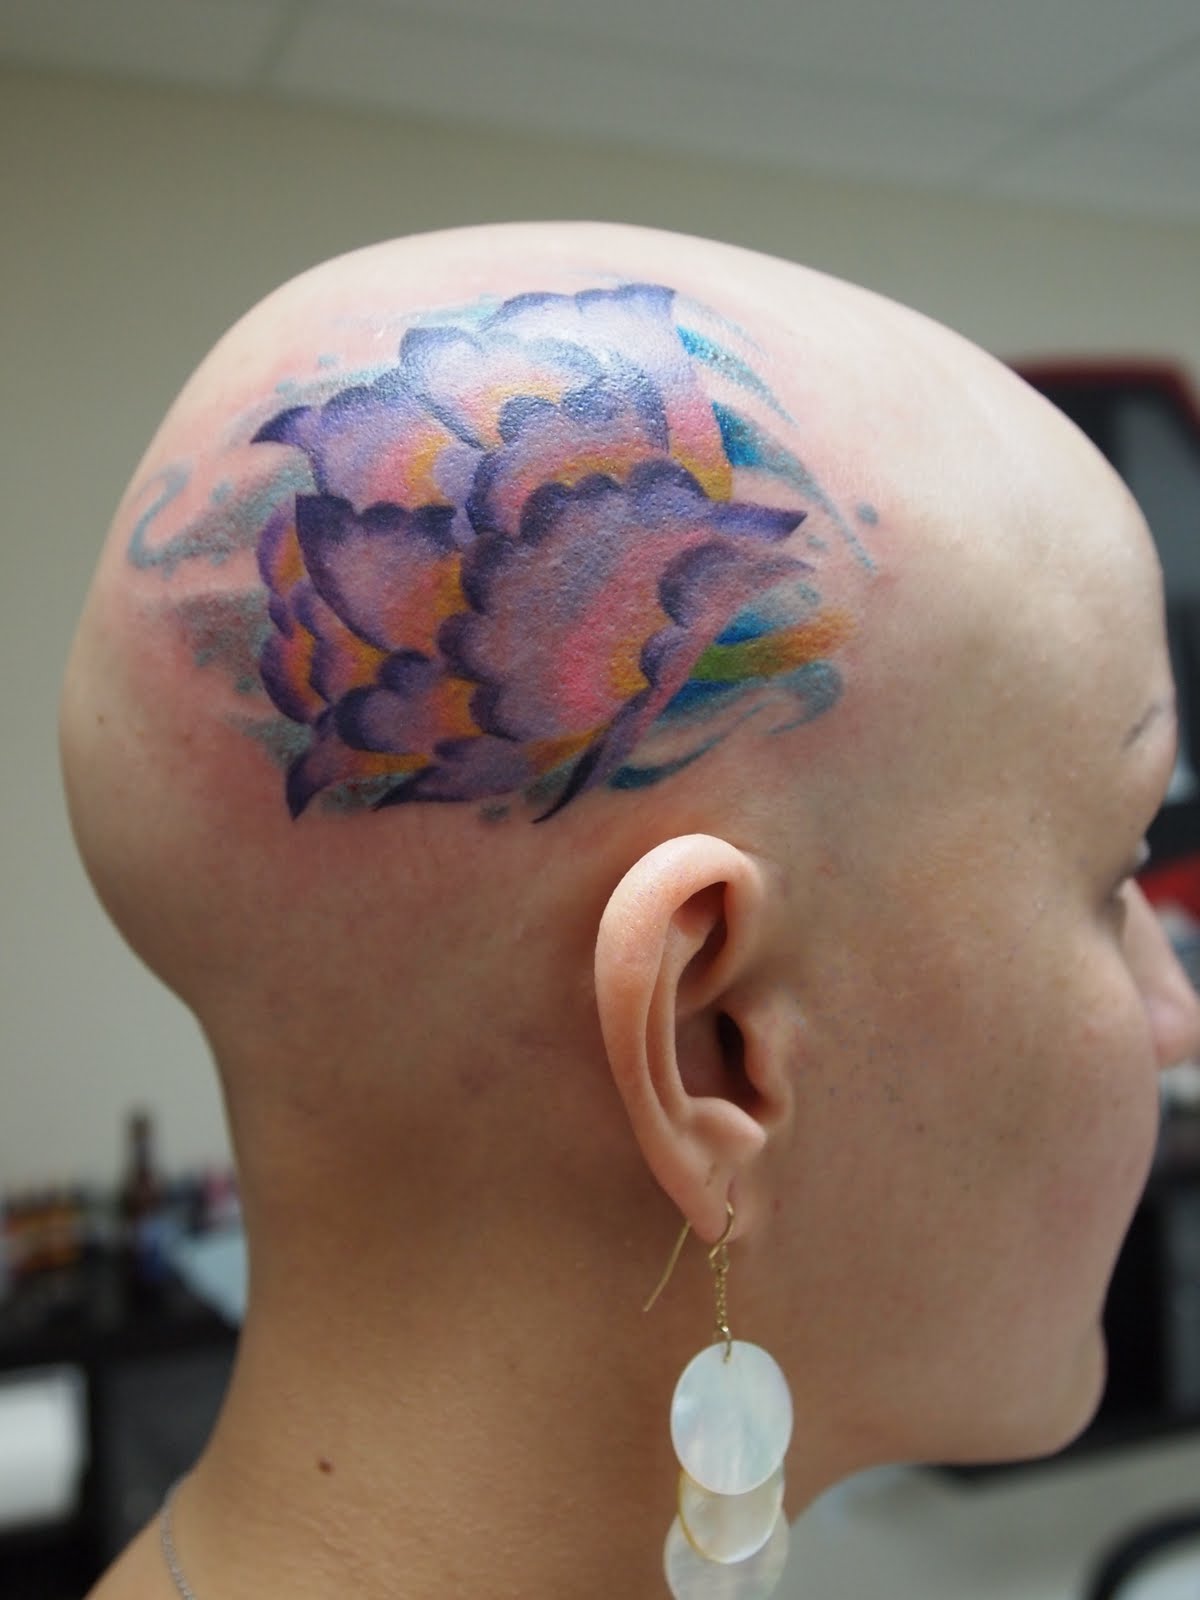 Flower Head Tattoo Design for Women - SheClick.com